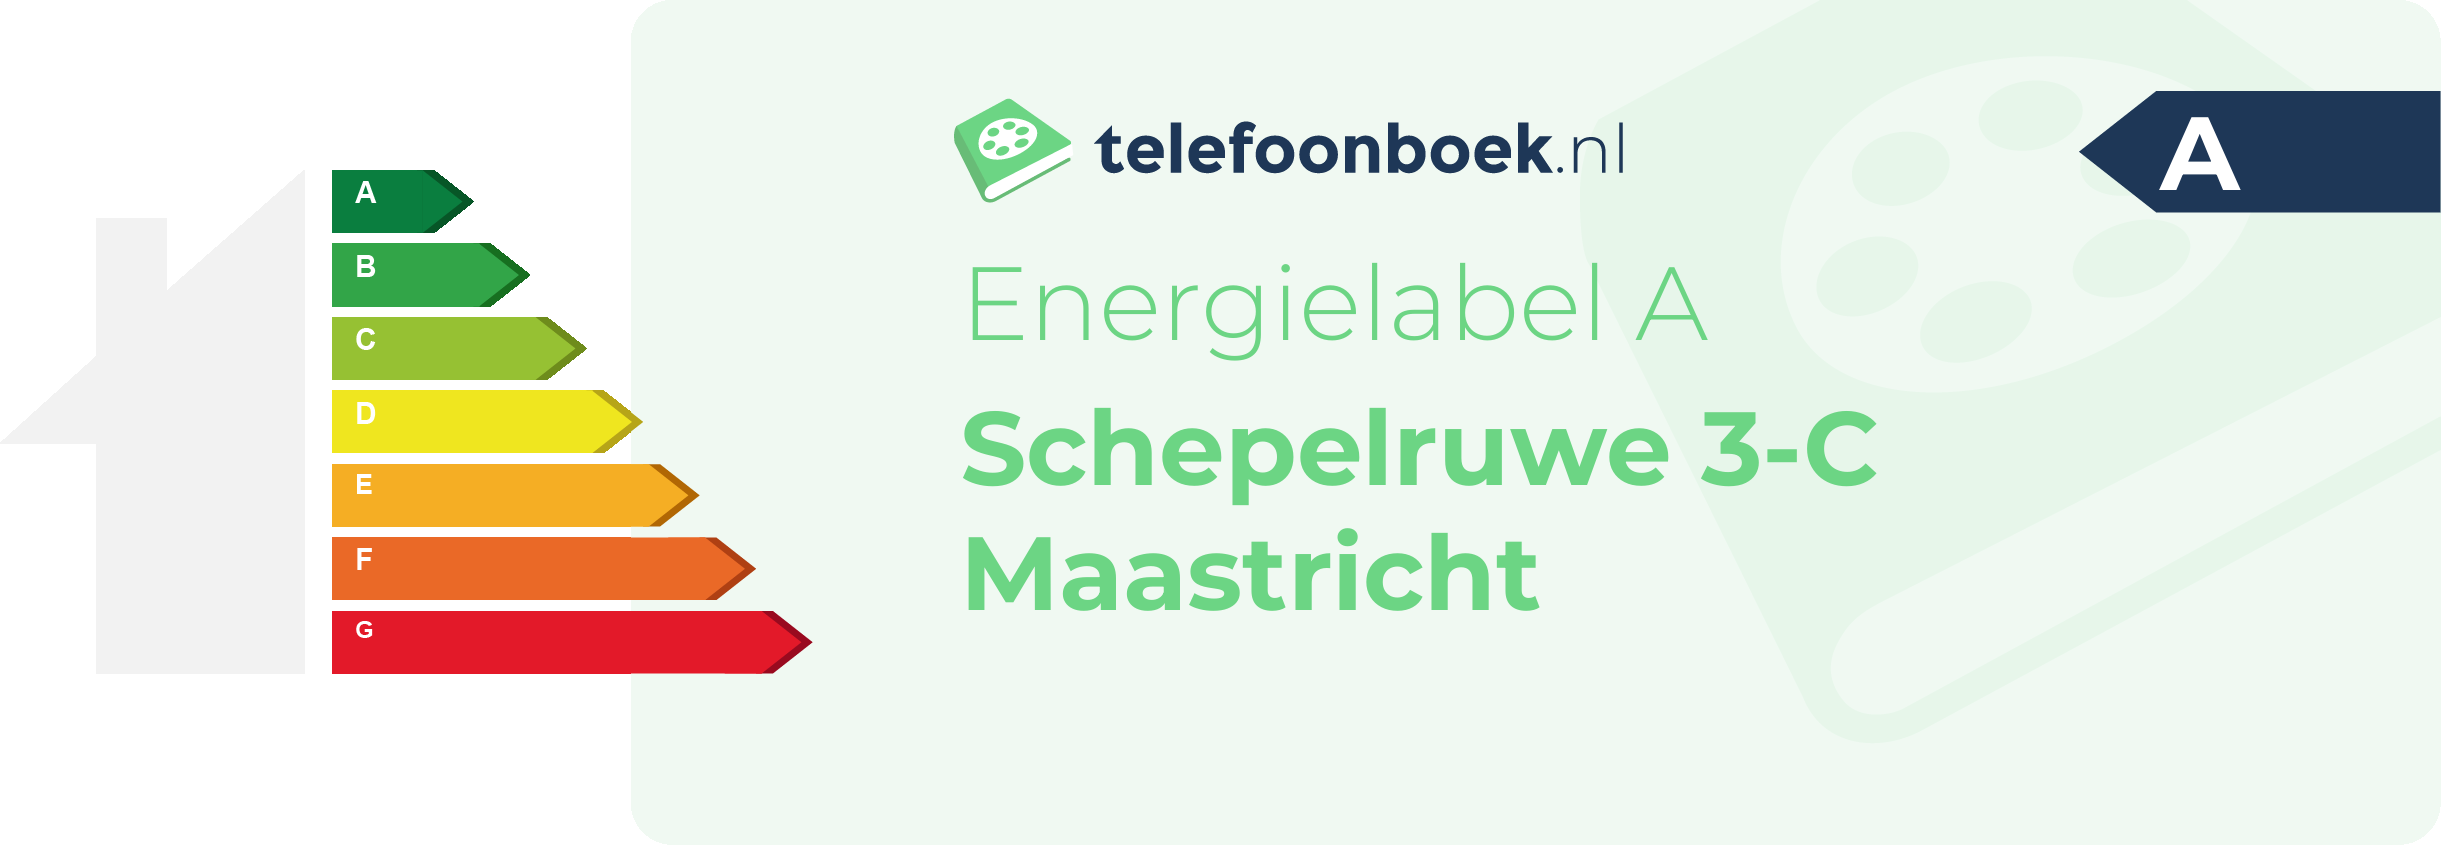 Energielabel Schepelruwe 3-C Maastricht